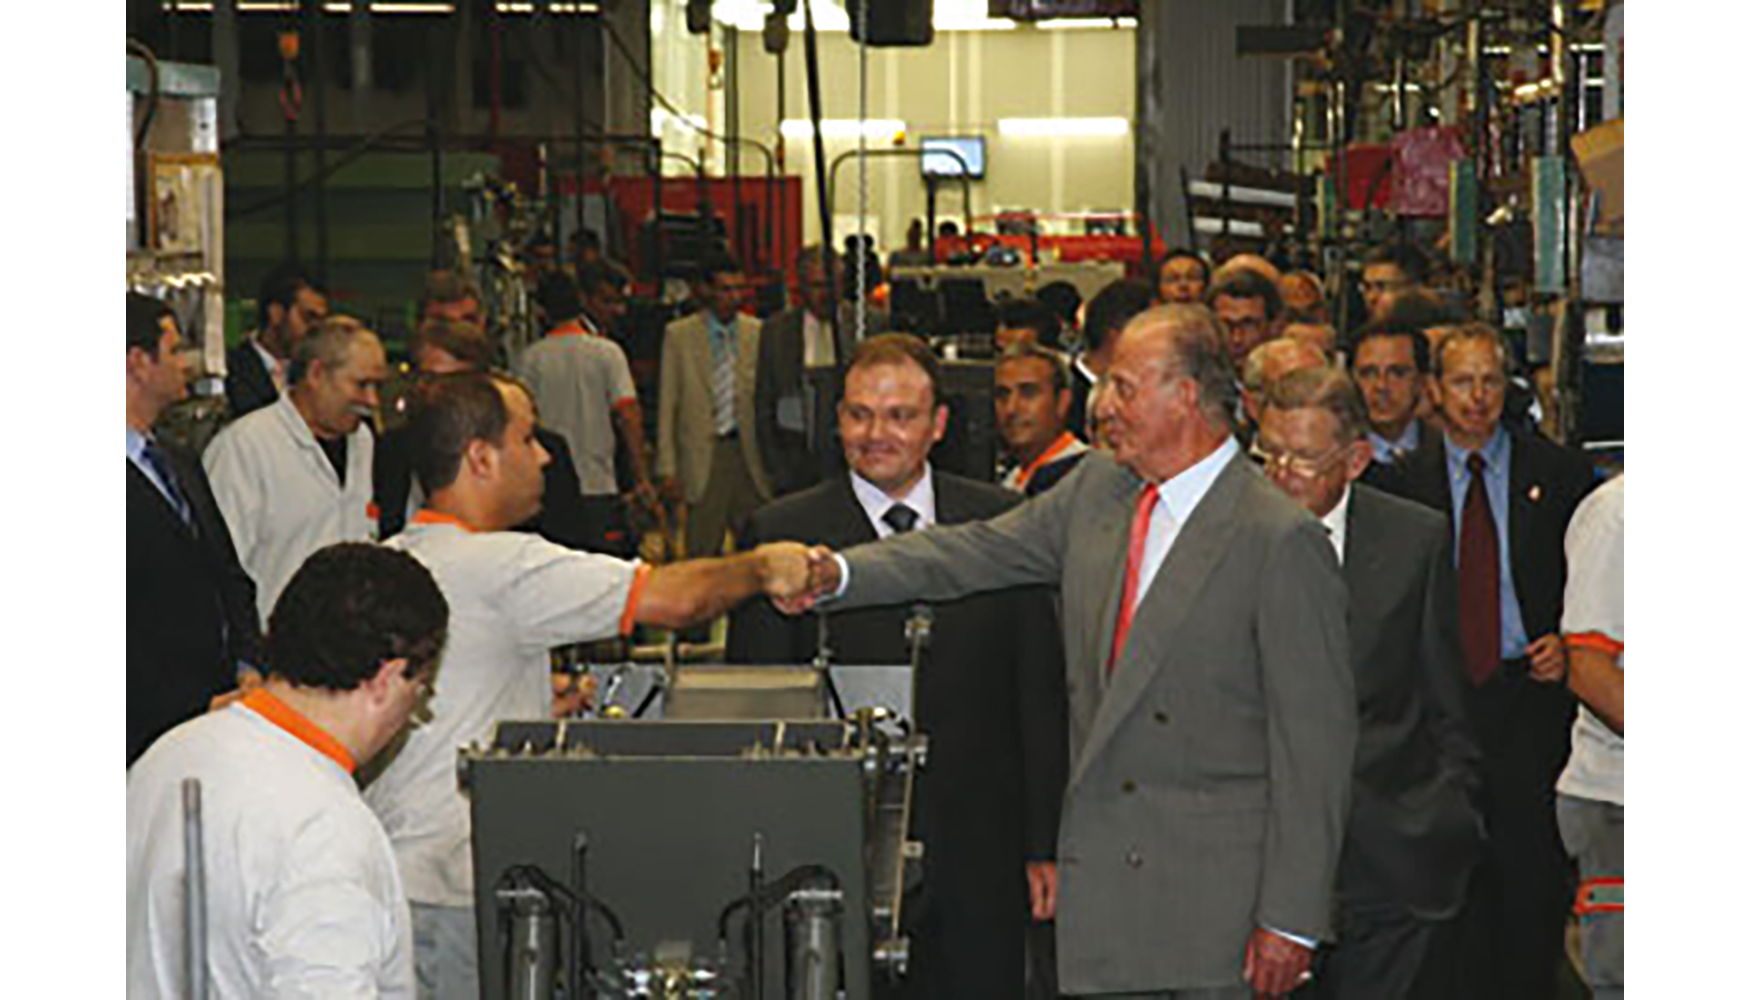 El rey Juan Carlos I visit las instalaciones de la firma Ausa en Manresa con motivo del 50 aniversario de la compaa